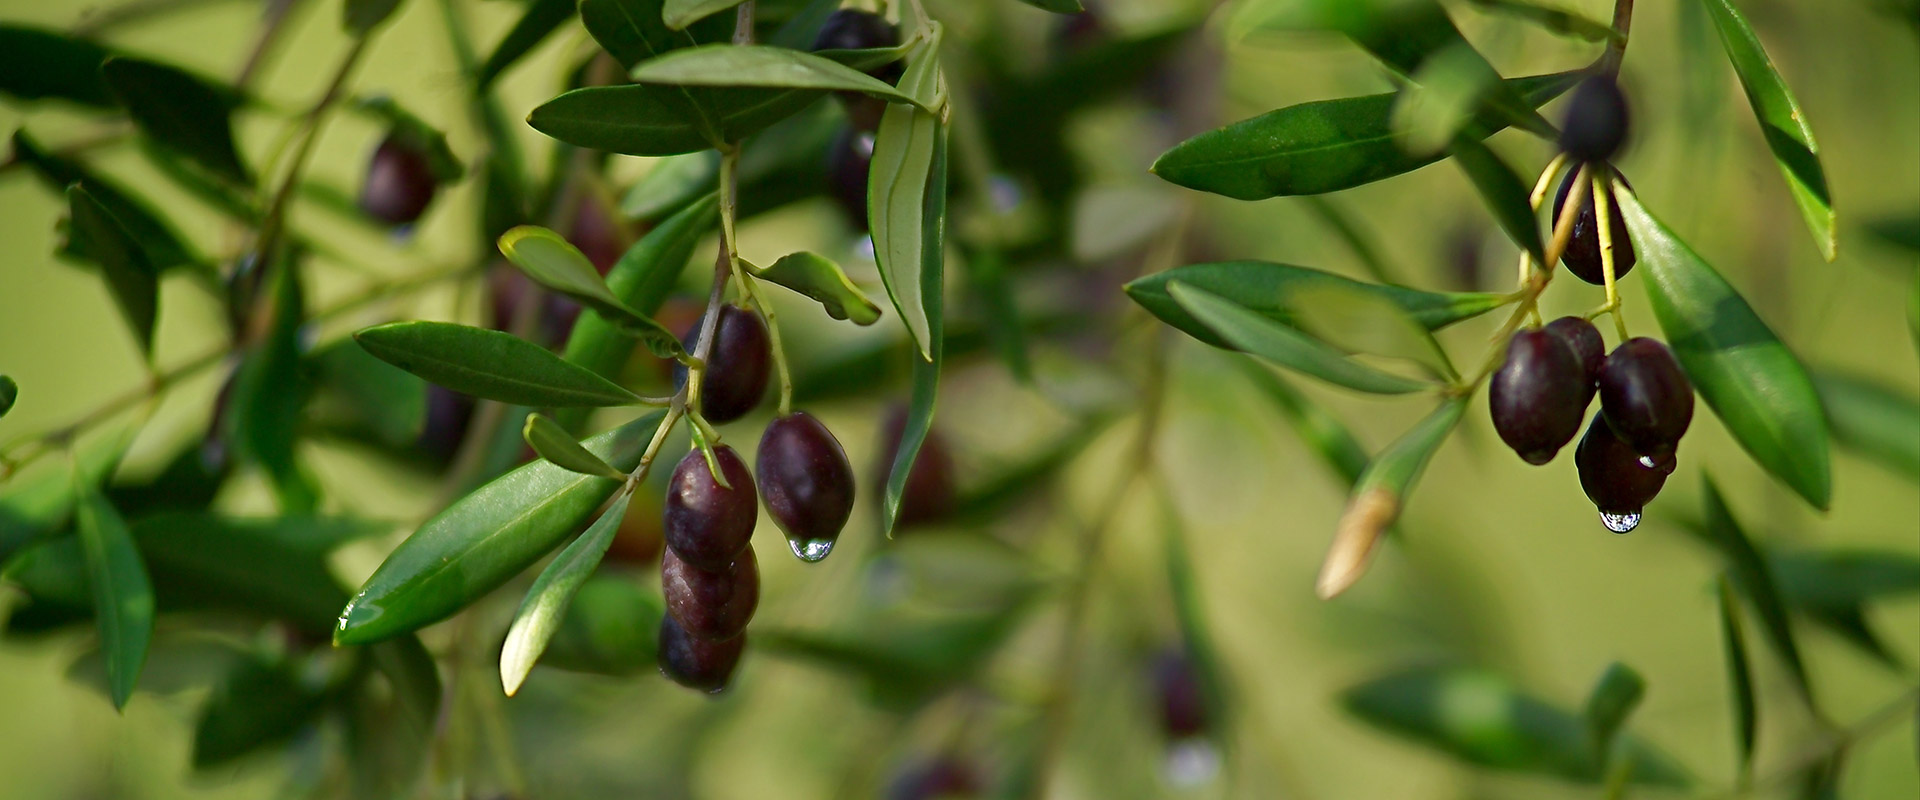 black olive plant